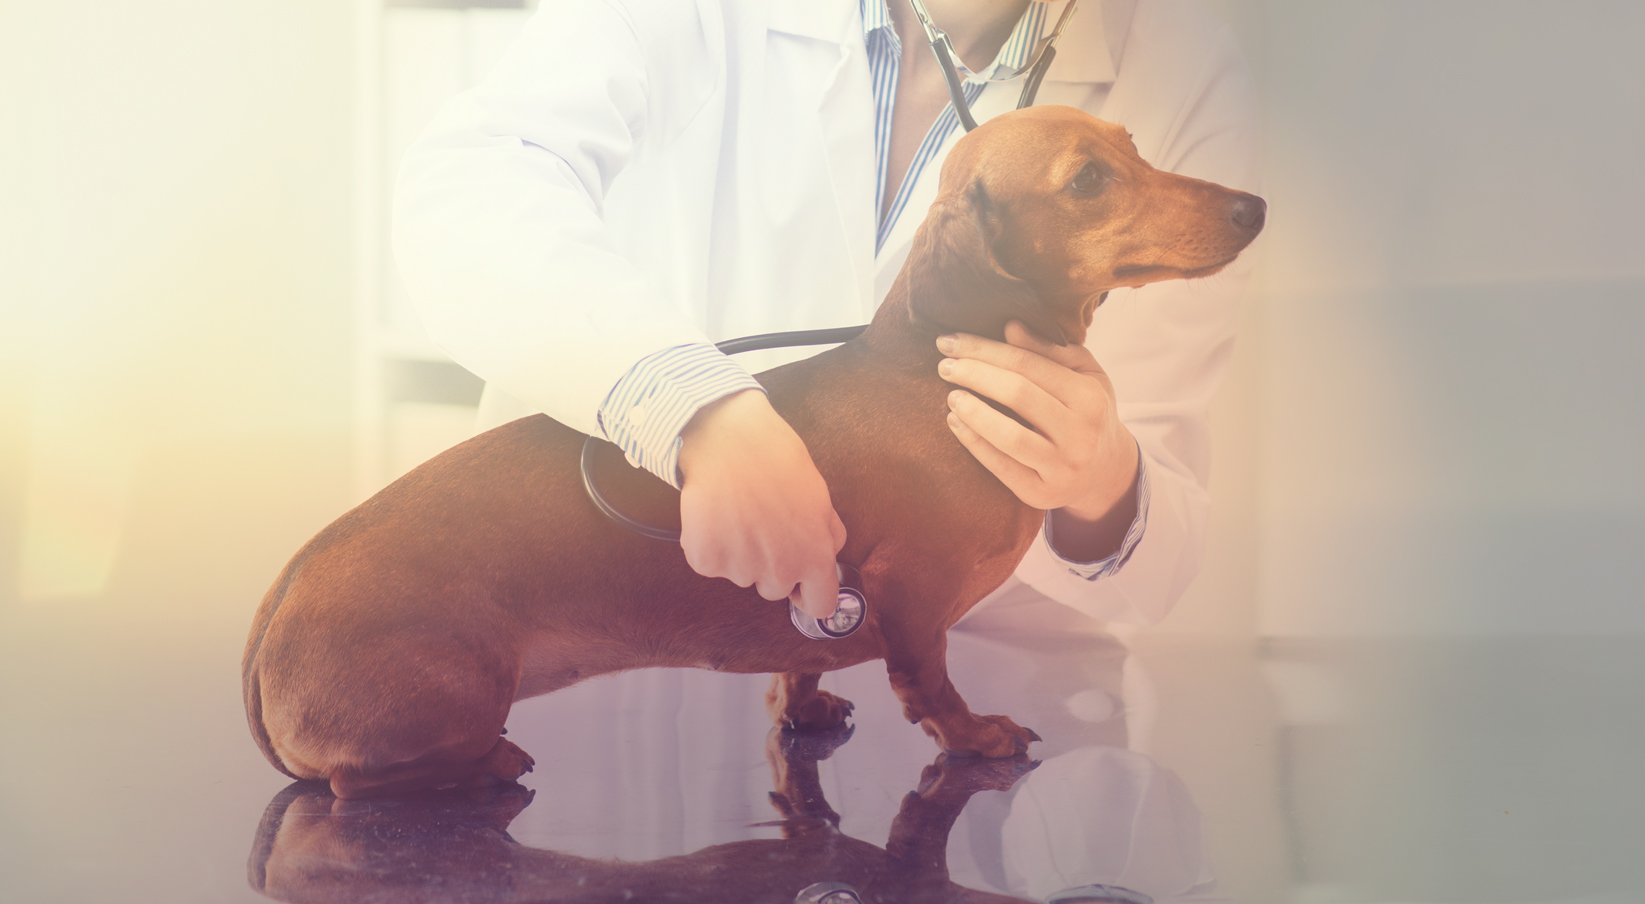 Seatown vet dog wellness exam